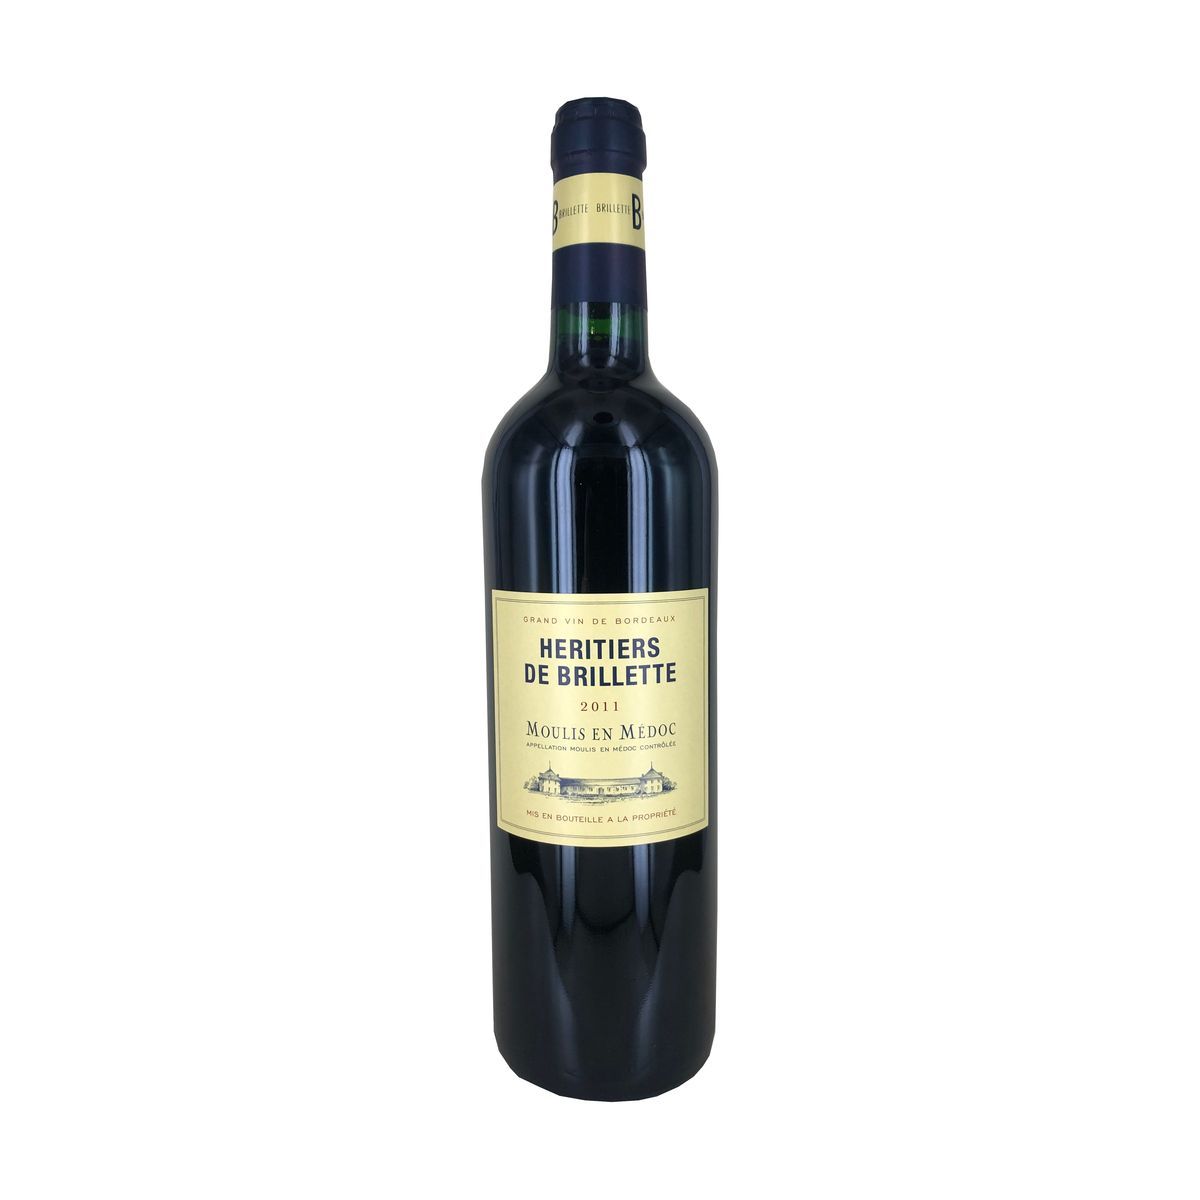 Vin rouge AOP Moulis-en-Médoc Héritiers de Brillette HVE 2011 75cl